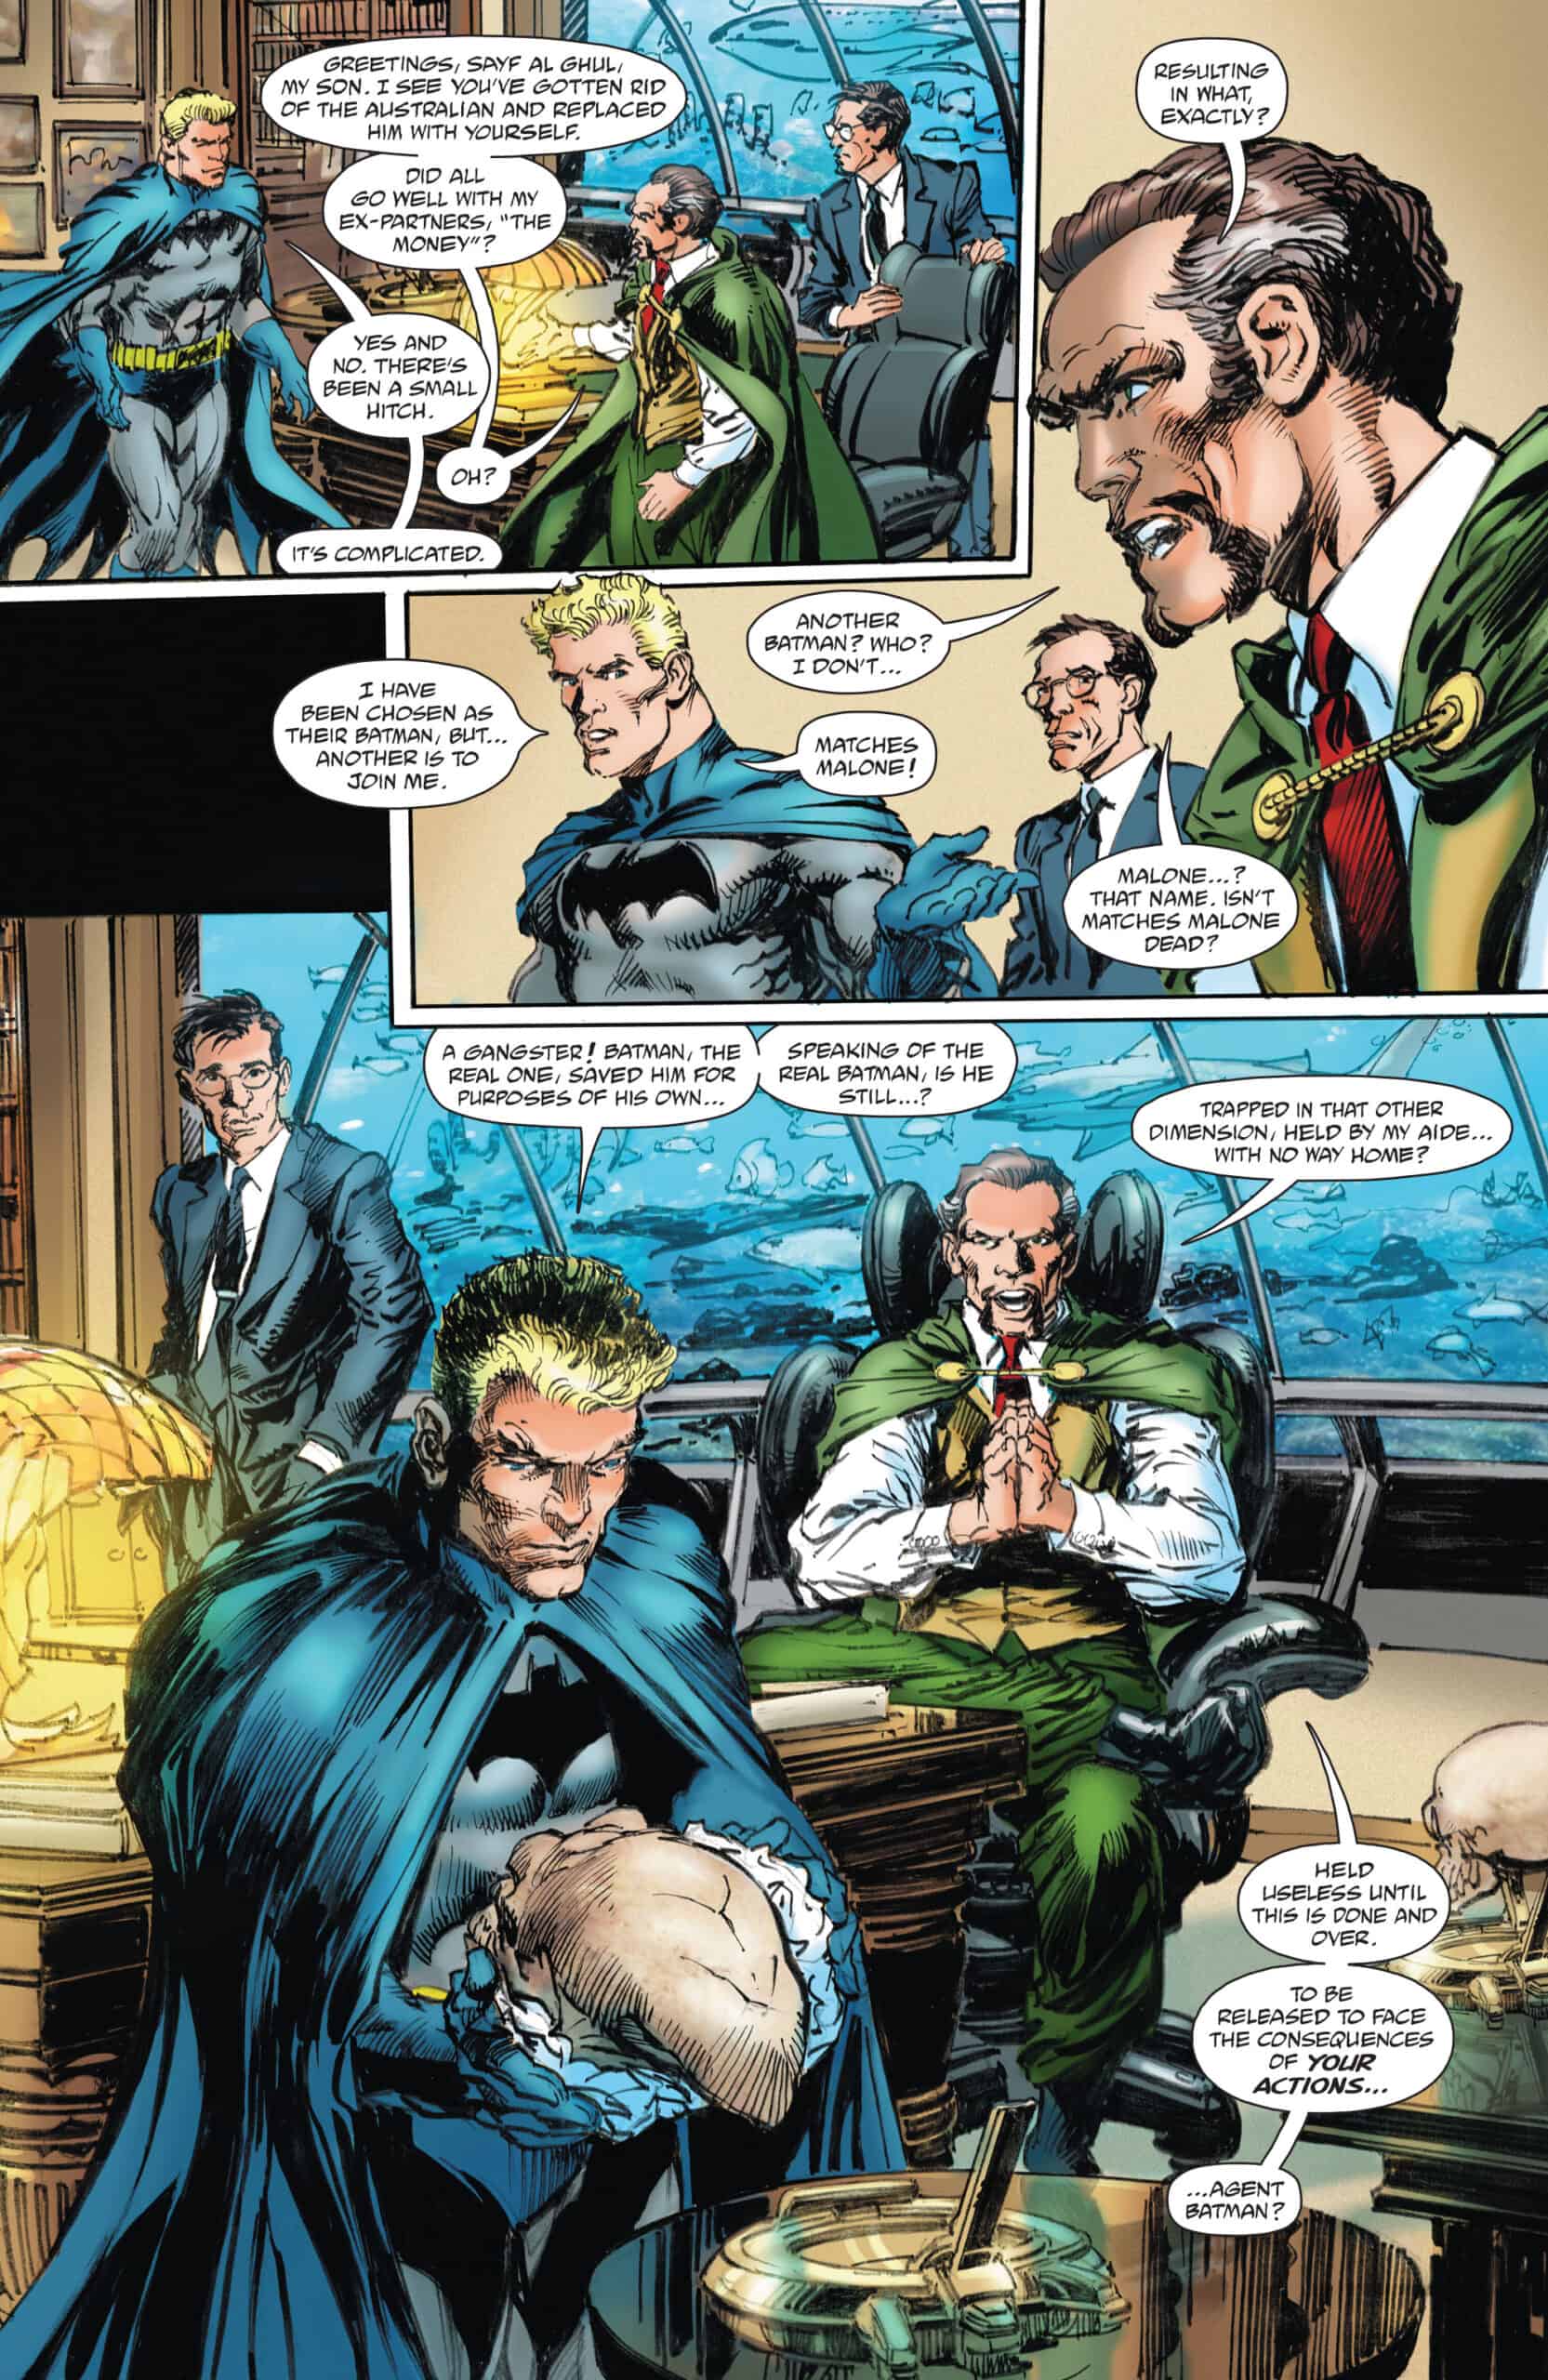 SNEAK PEEK: Preview of DC Comics' Batman vs. Ra's al Ghul #6 - Comic Watch